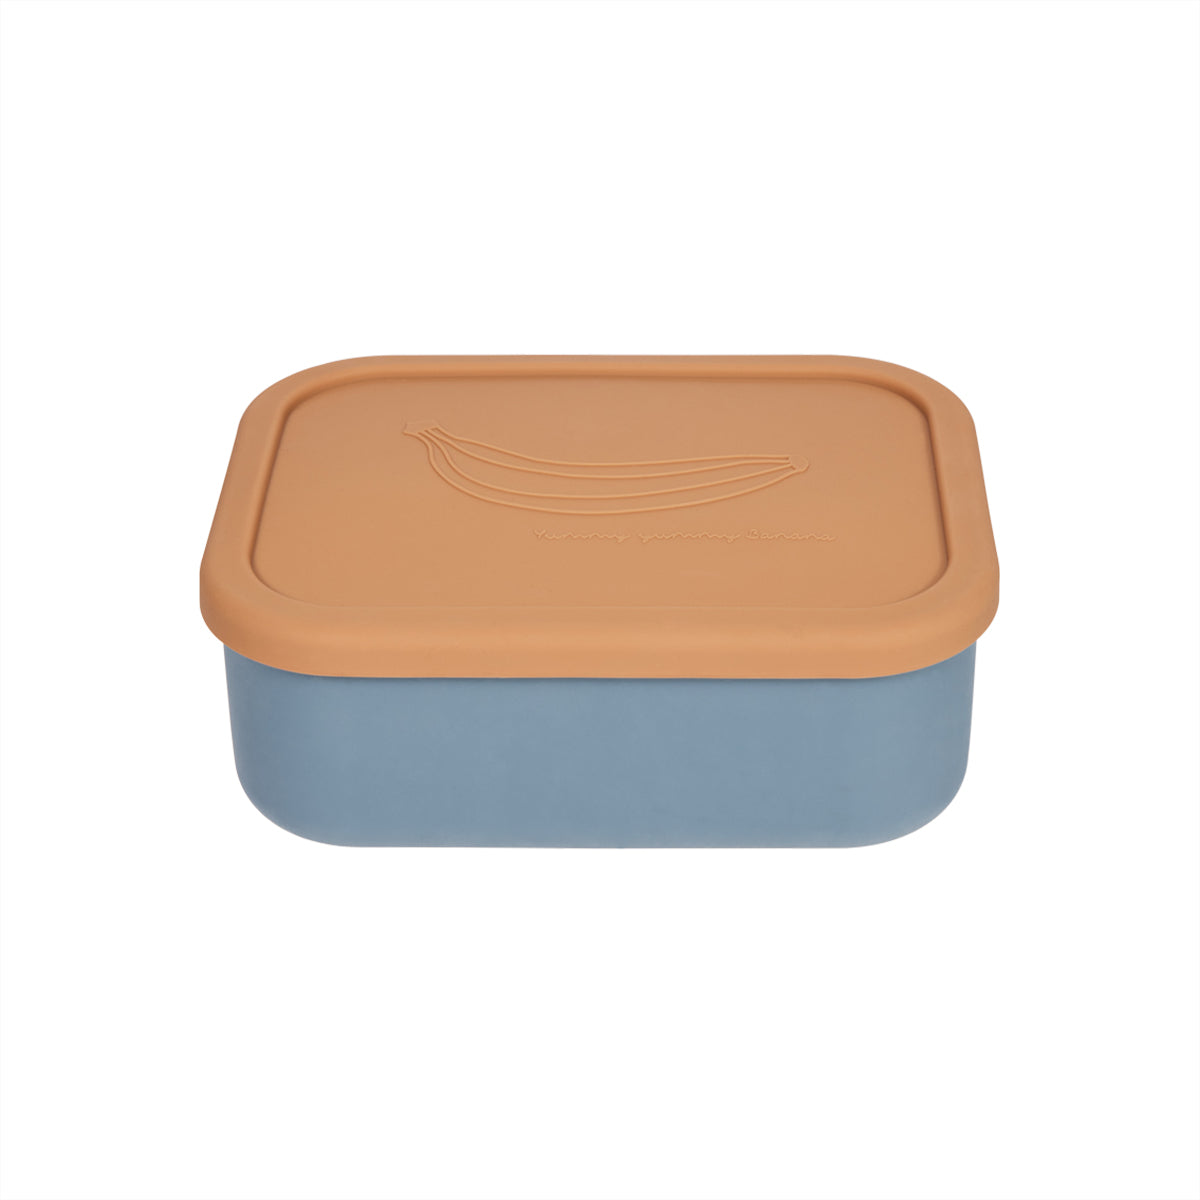 OYOY MINI Yummy Lunch Box - Large Lunch Box 314 Fudge / Blue